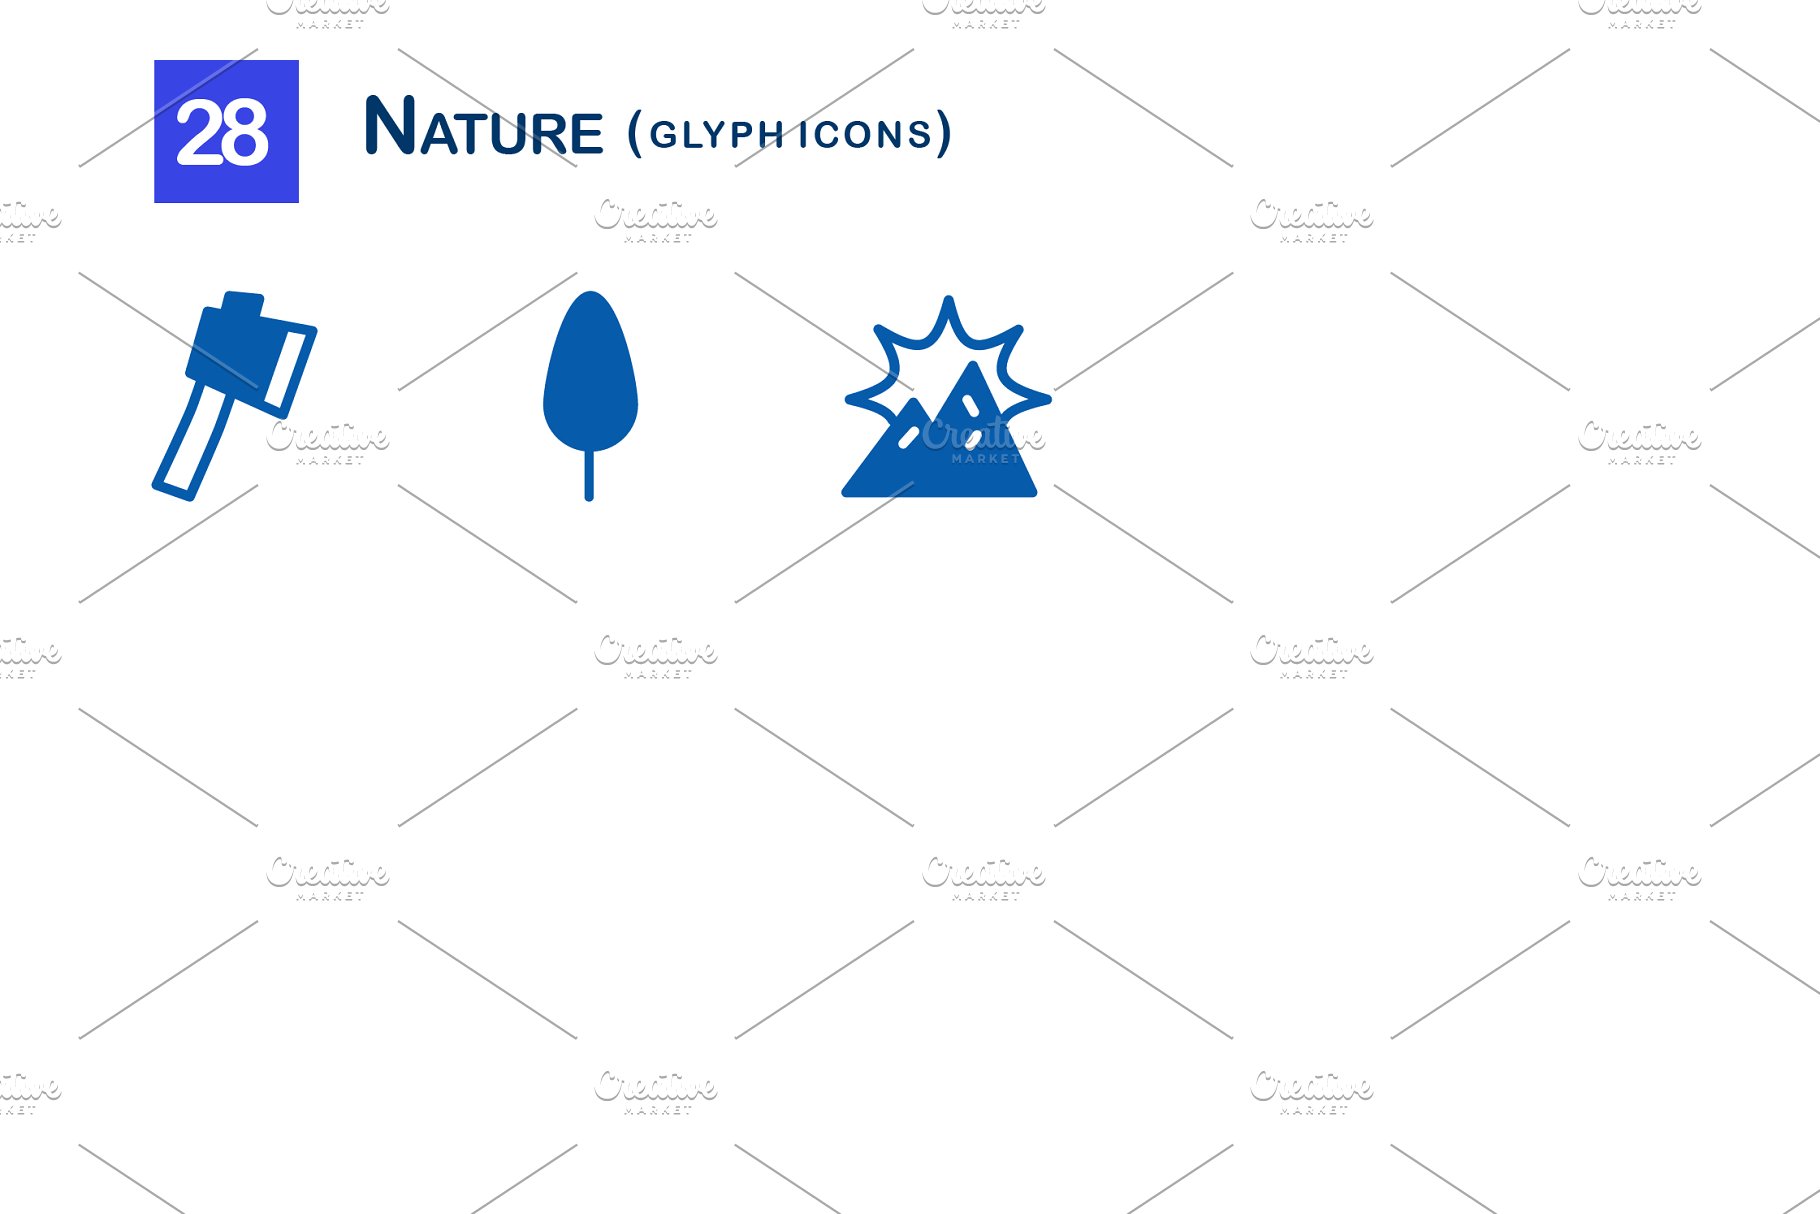 28个大自然元素字体素材库精选图标 28 Nature Glyph Icons插图(2)